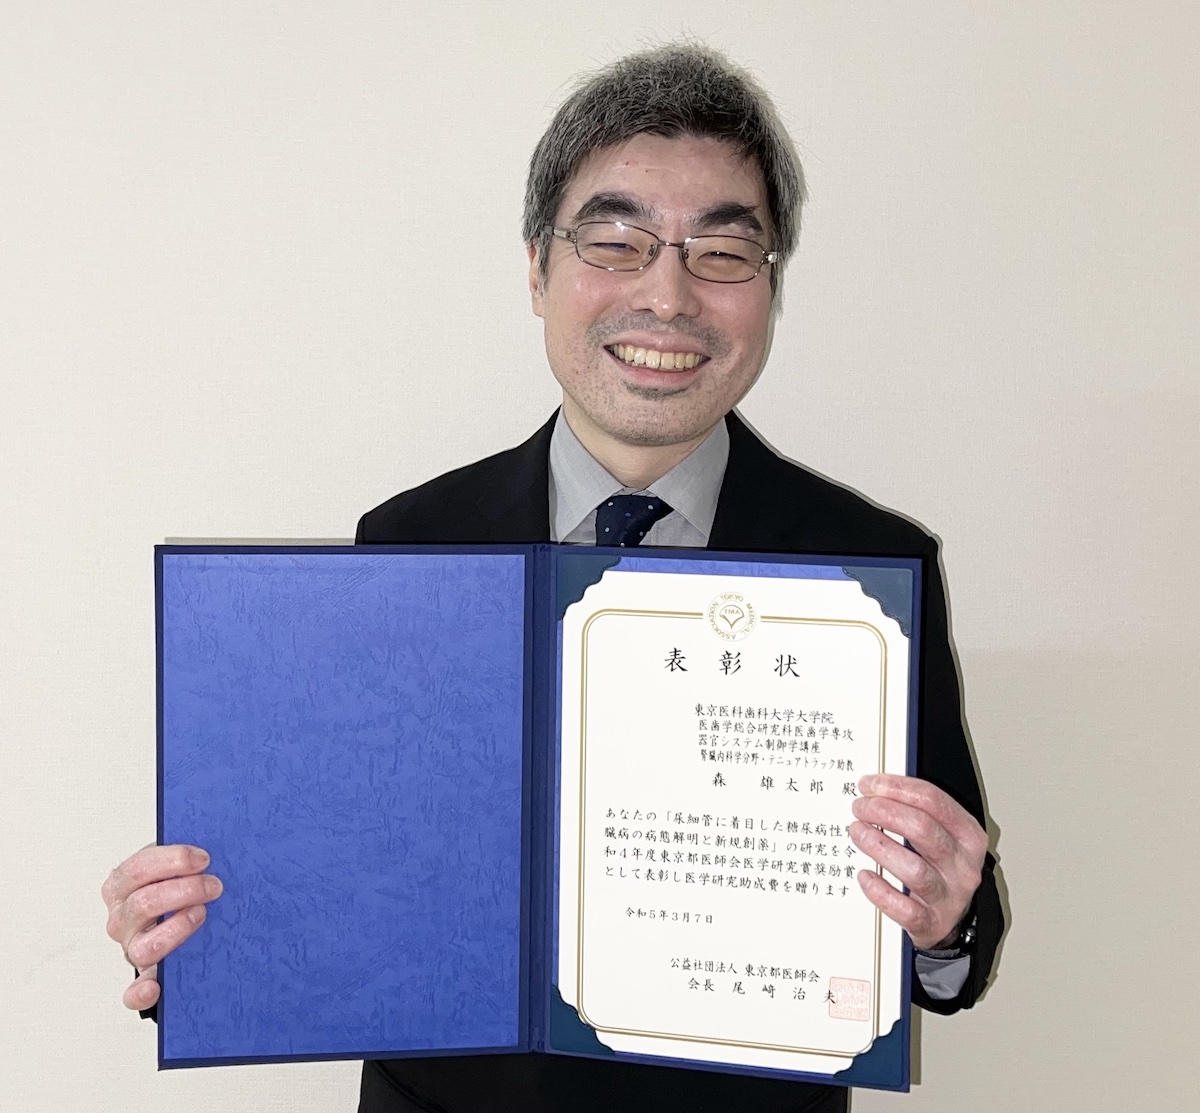 森雄太郎先生 令和4年度東京都医師会医学研究賞奨励賞を受賞